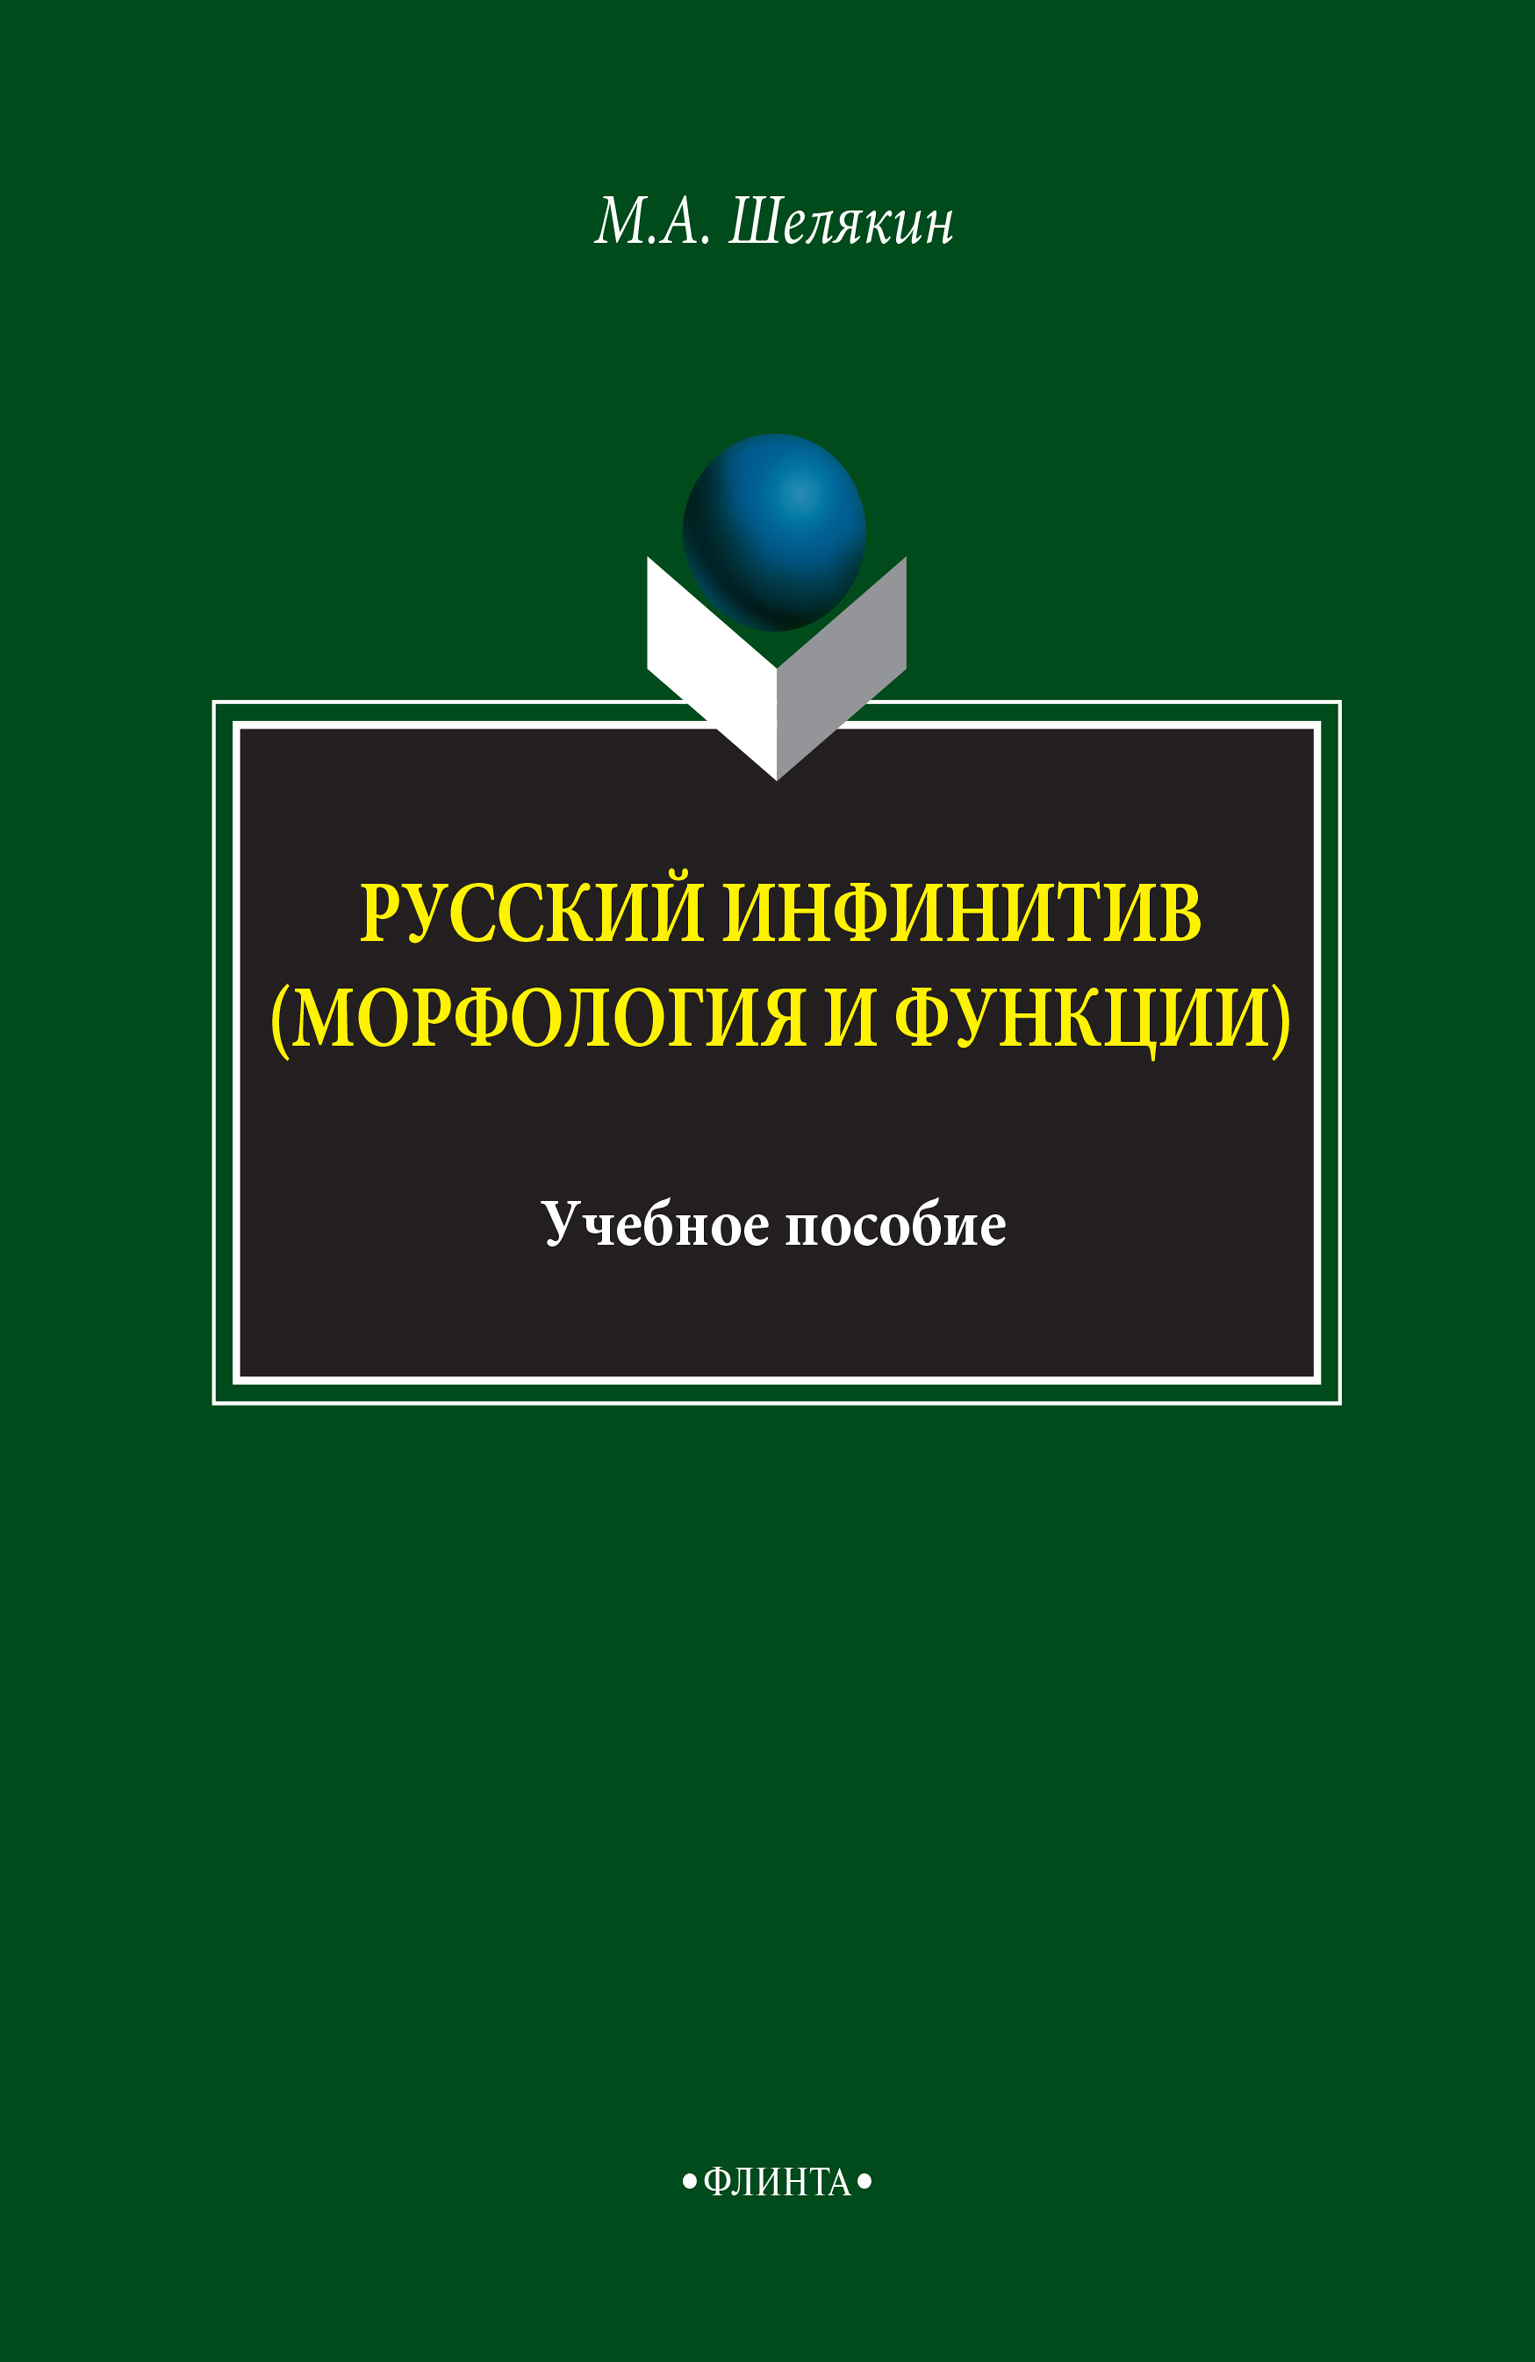 Русский инфинитив (морфология и функции). Учебное пособие